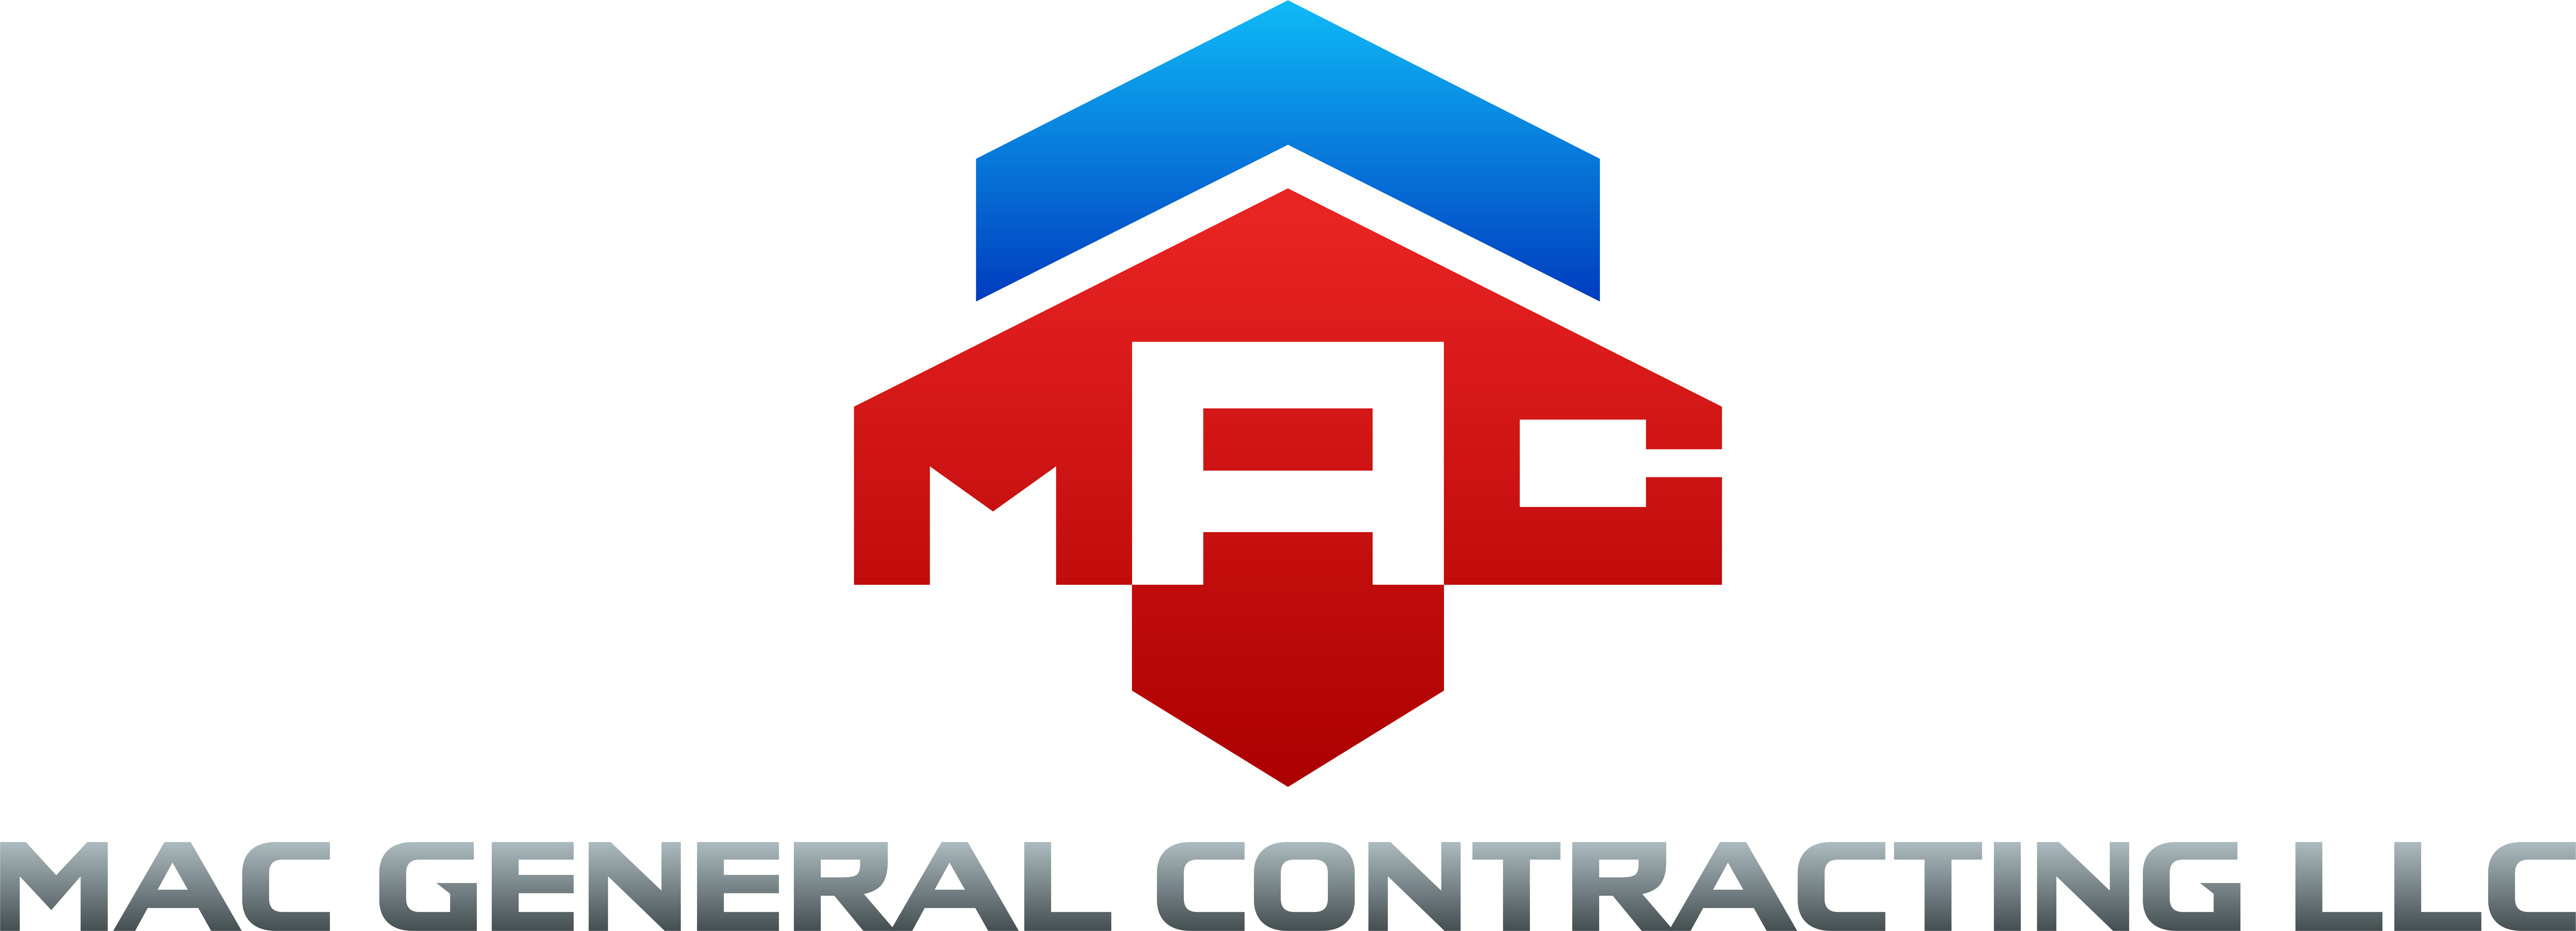 MAC General Contracting LLC Logo